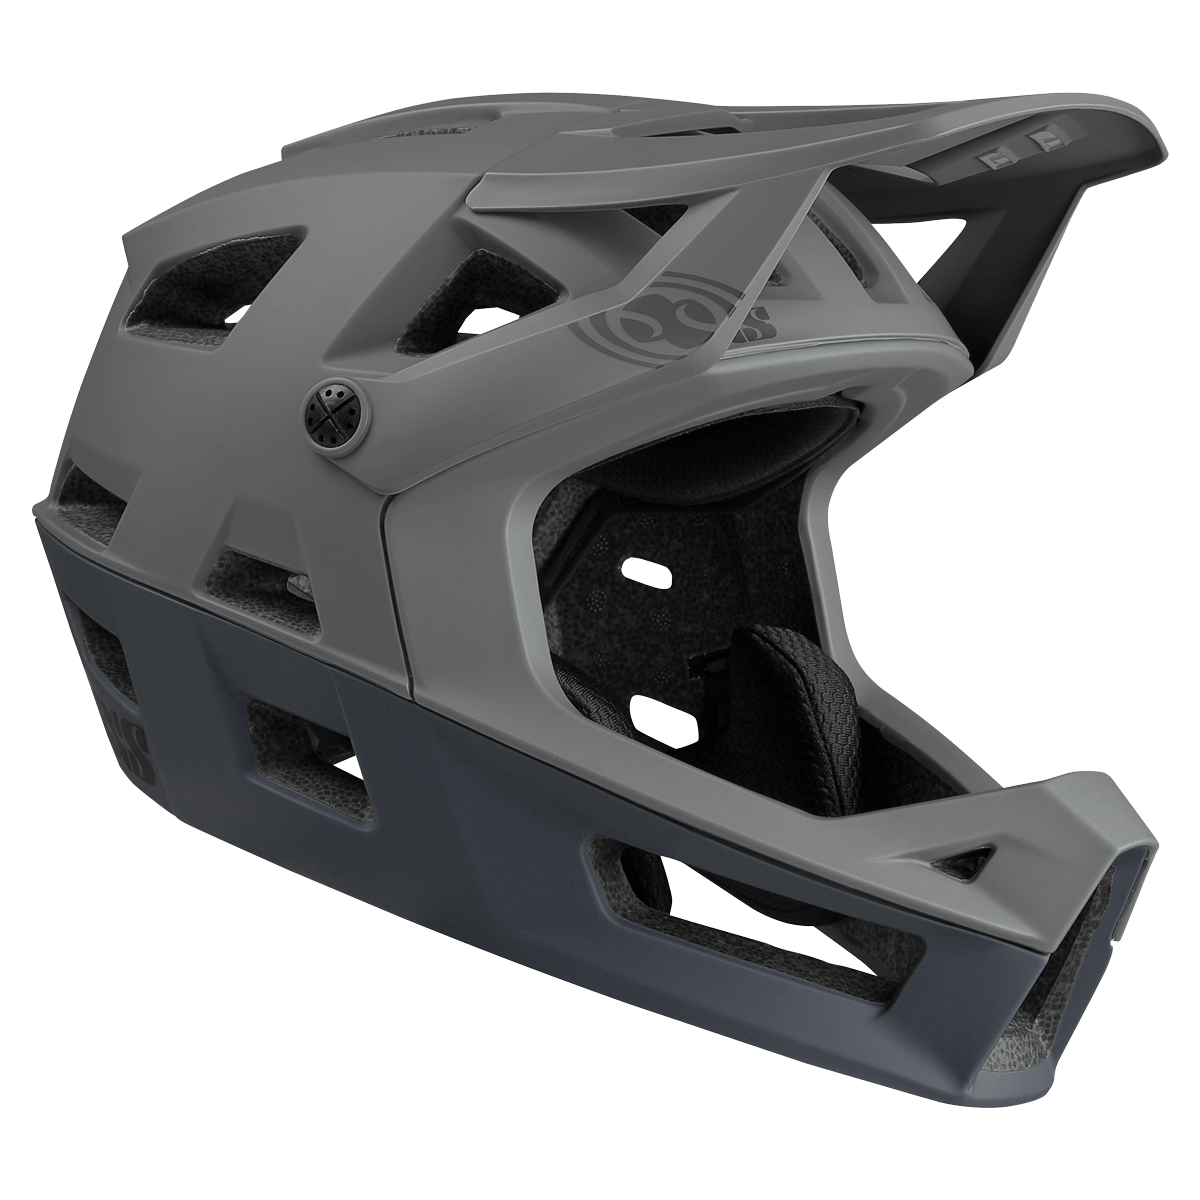 iXS Trigger FF pulls off the lightest full face helmet at 600g